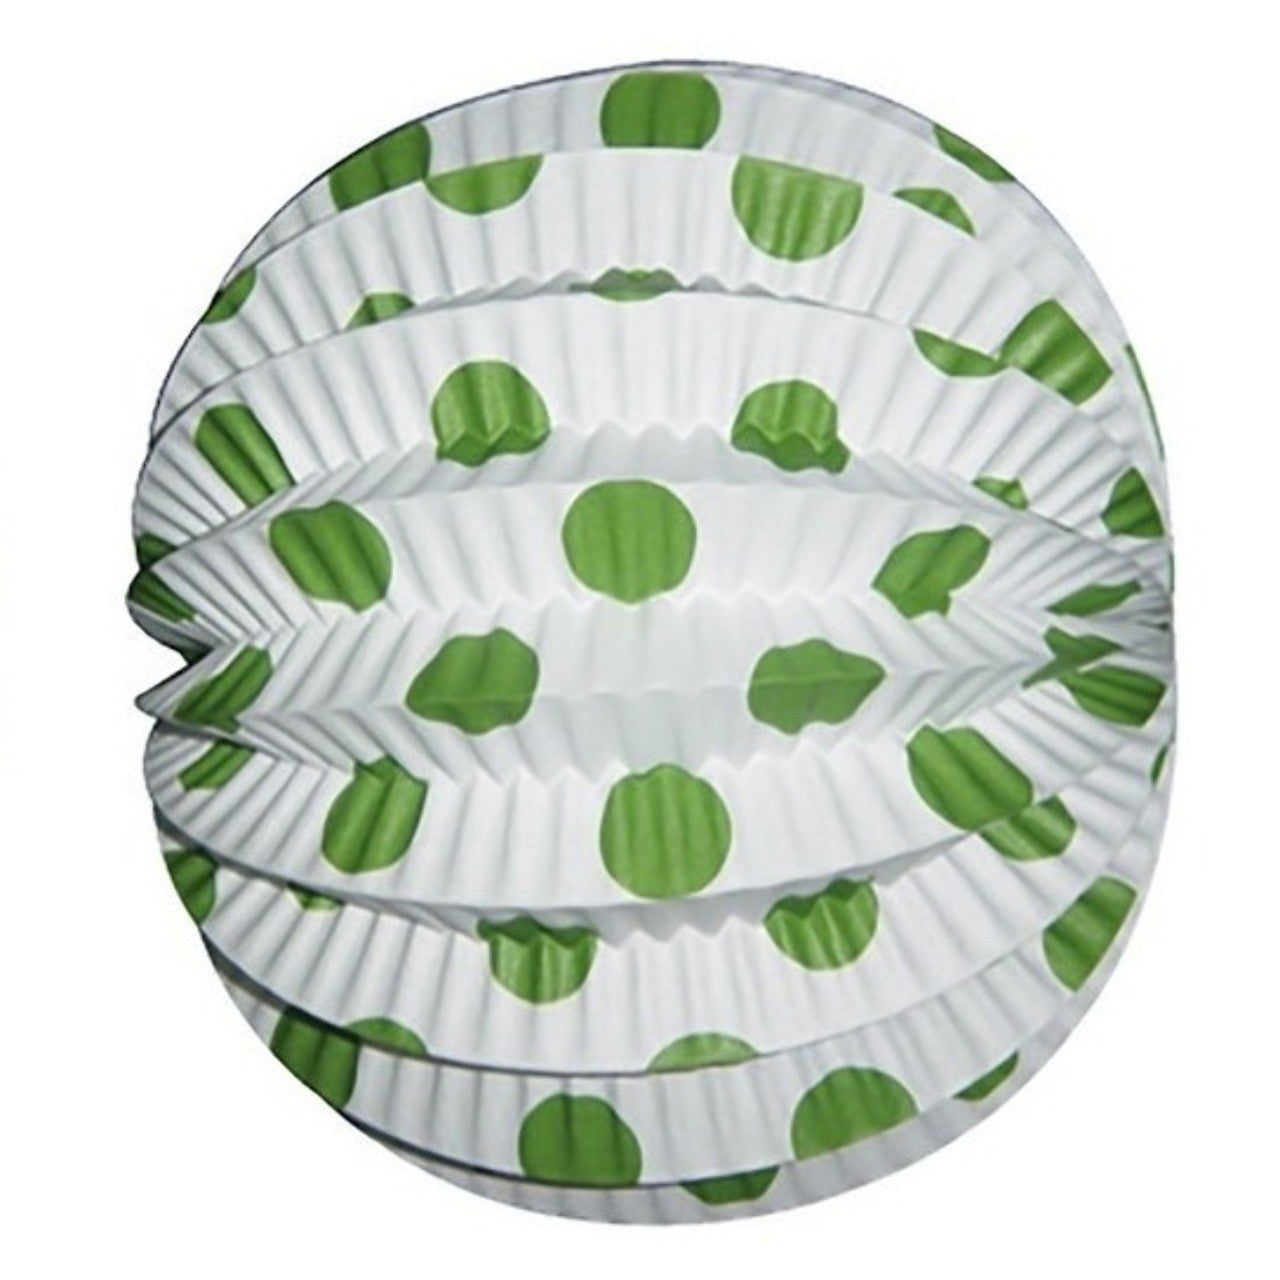 Packung mit 12 weiße Kirmes Laternen mit grünen Punkten